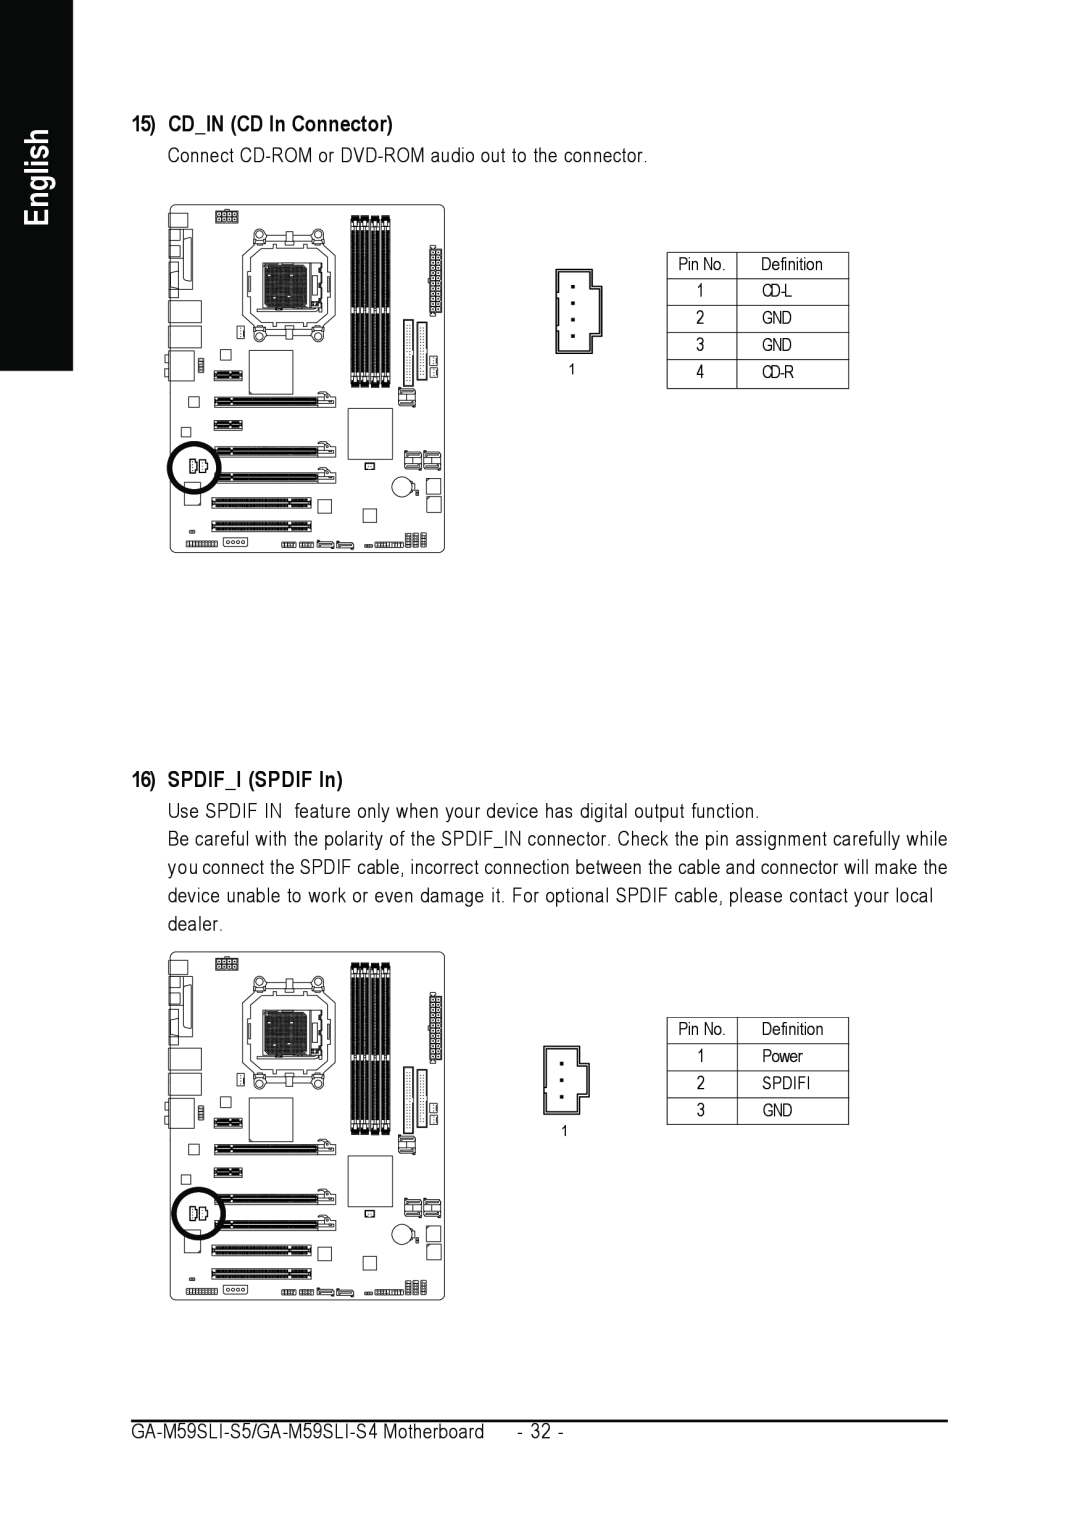 Gigabyte GA-M59SLI-S5, GA-M59SLI-S4 user manual CDIN CD In Connector, SPDIFI SPDIF In, English 